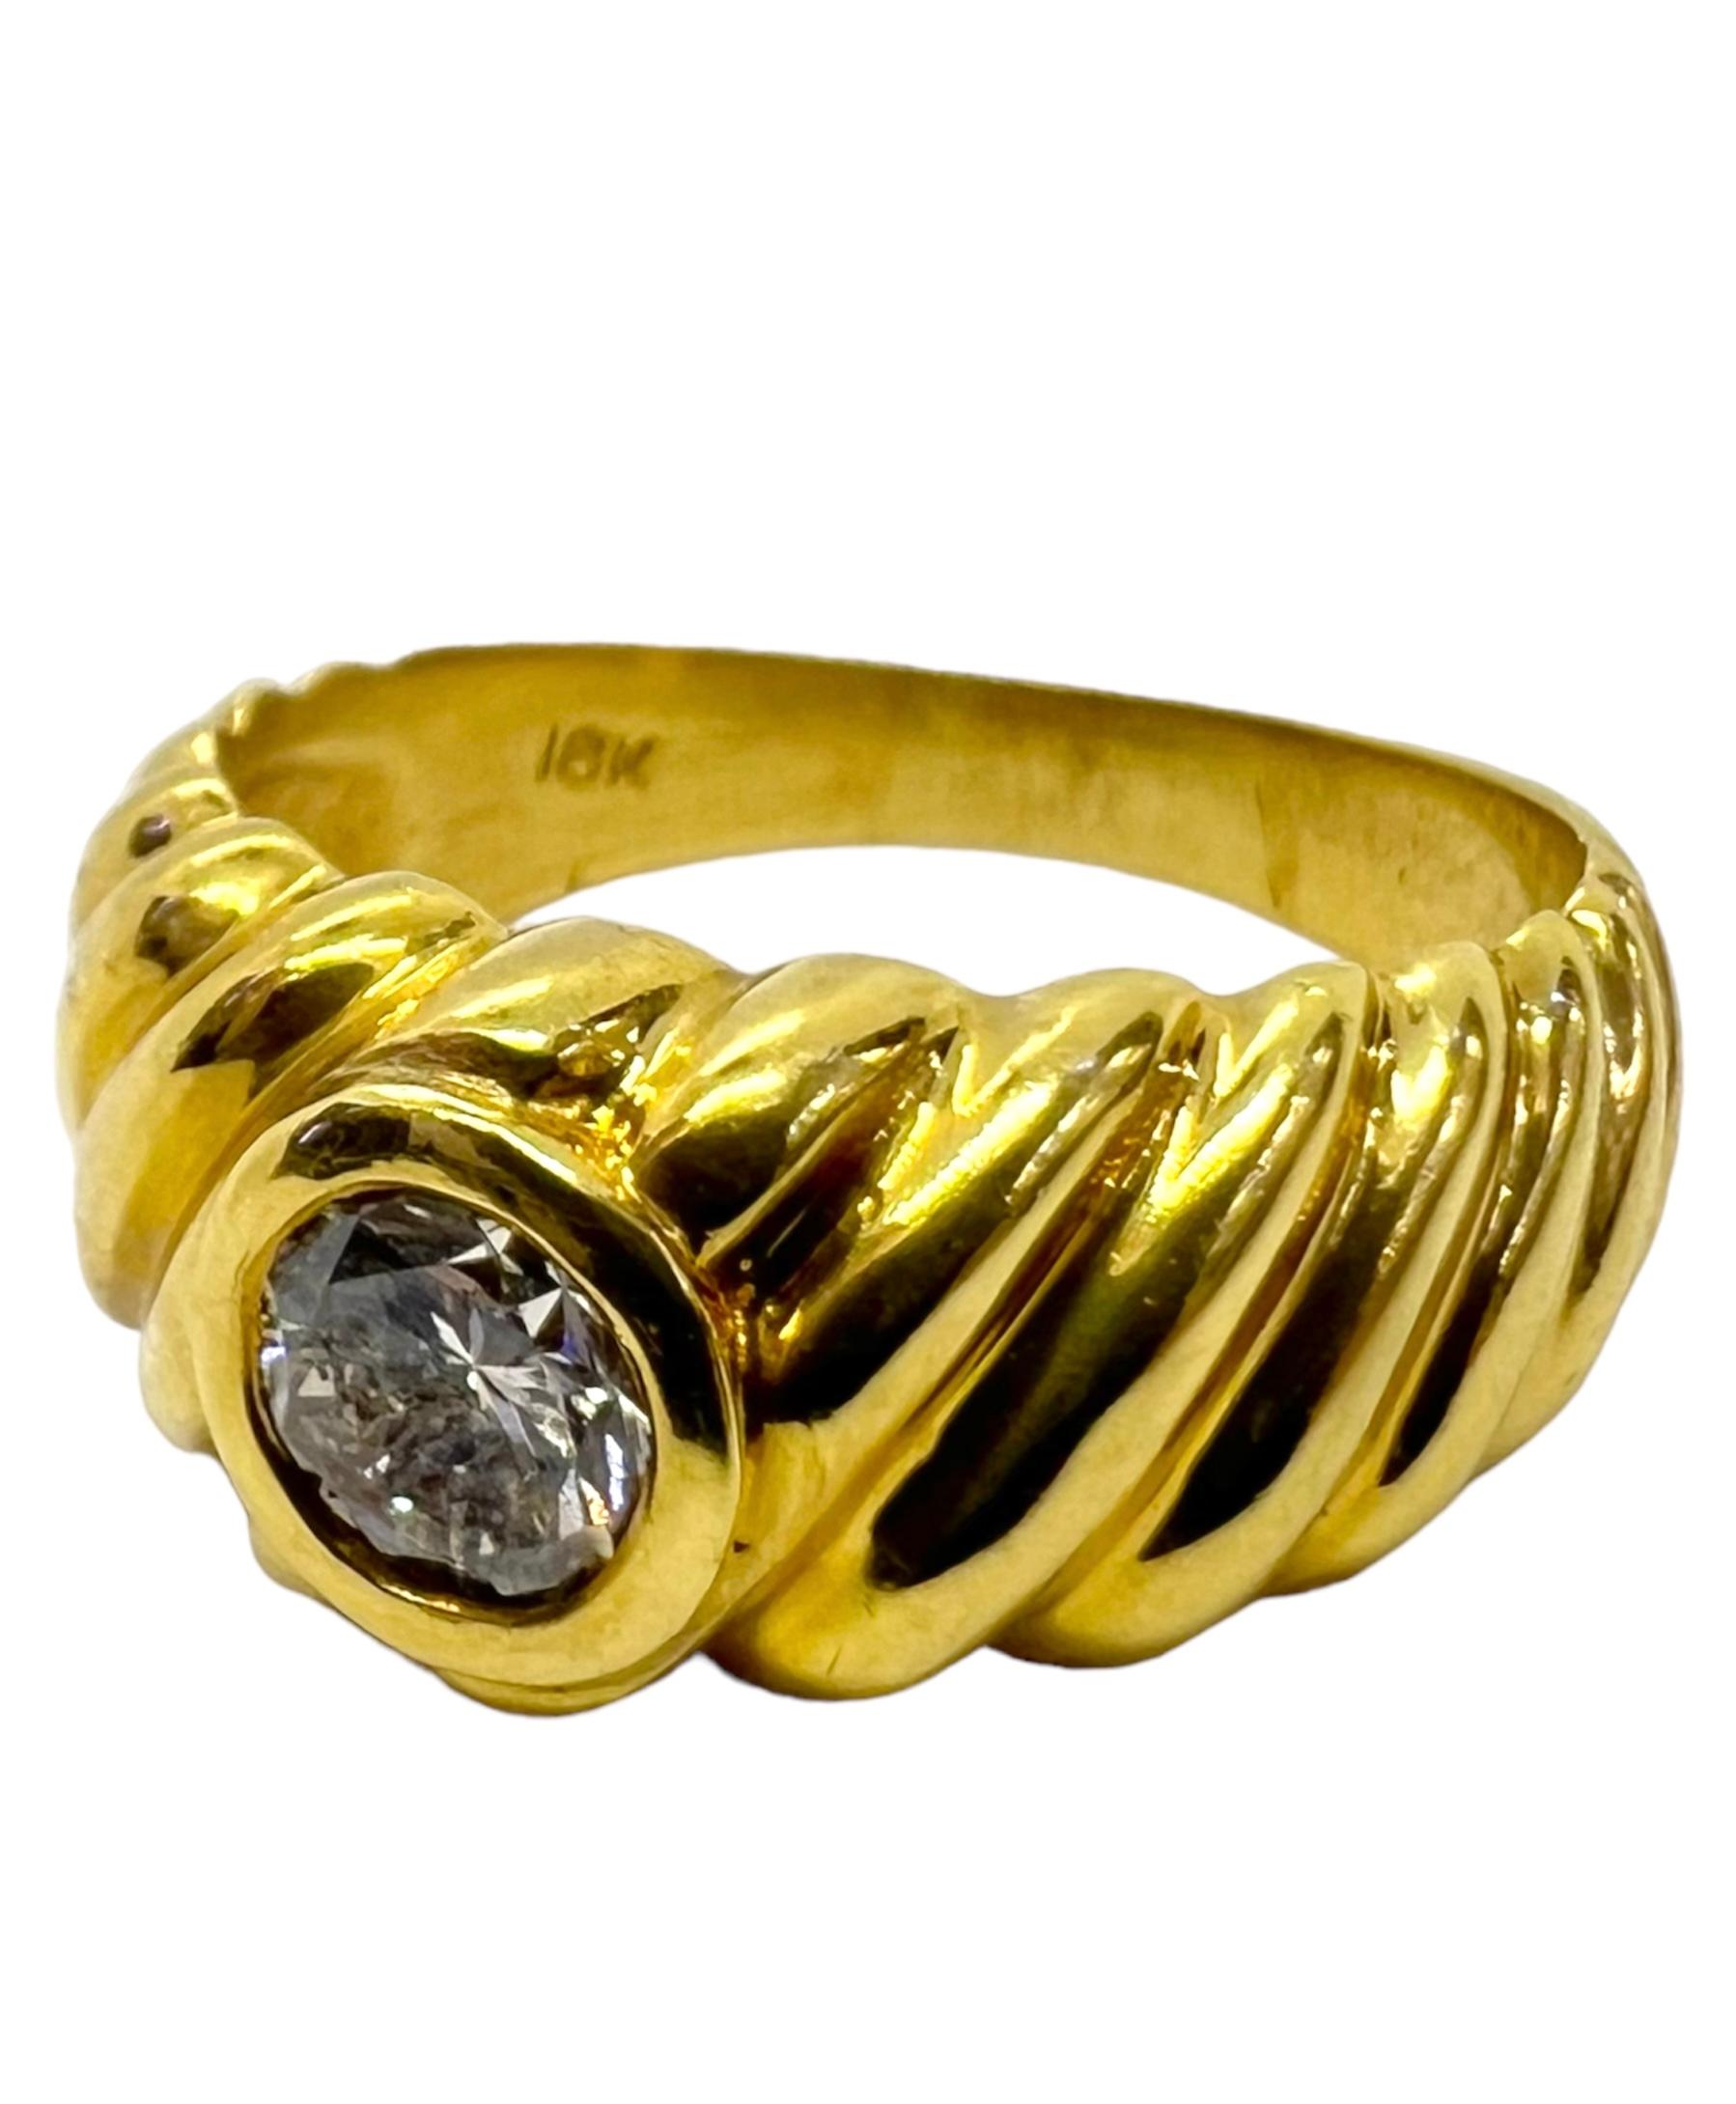 Ring aus 18 Karat Gelbgold mit einem runden Diamanten von 0,46 Karat.

Sophia D von Joseph Dardashti LTD ist seit 35 Jahren weltweit bekannt und lässt sich vom klassischen Art-Déco-Design inspirieren, das mit modernen Fertigungstechniken